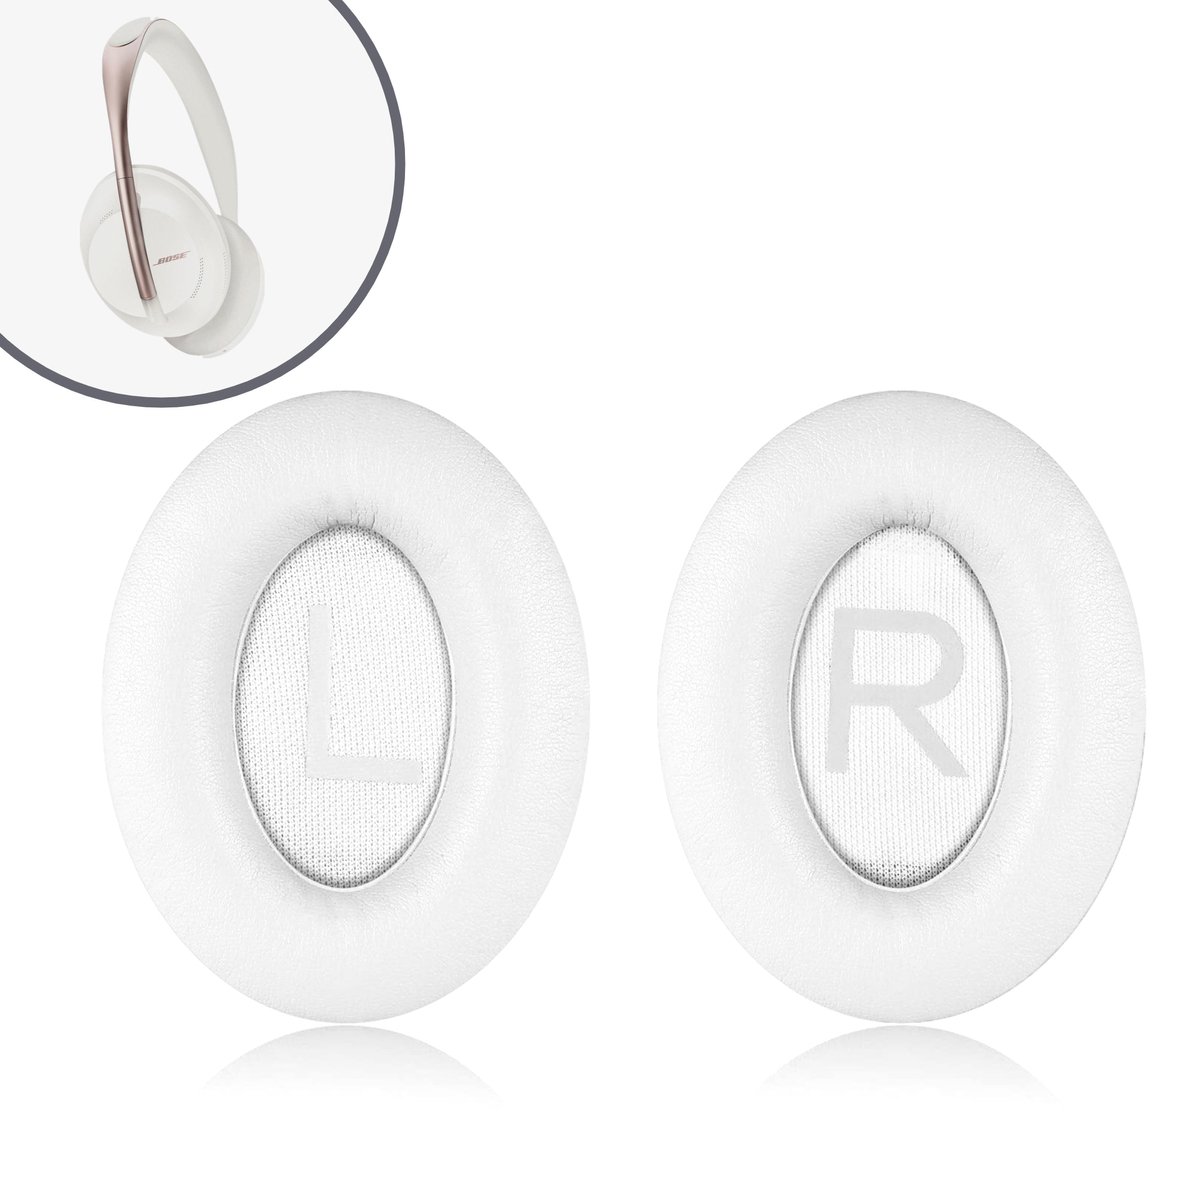 Oorkussens geschikt voor Bose 700 / Bose NC 700 - Oorkussens voor koptelefoon - Ear pads headphones wit